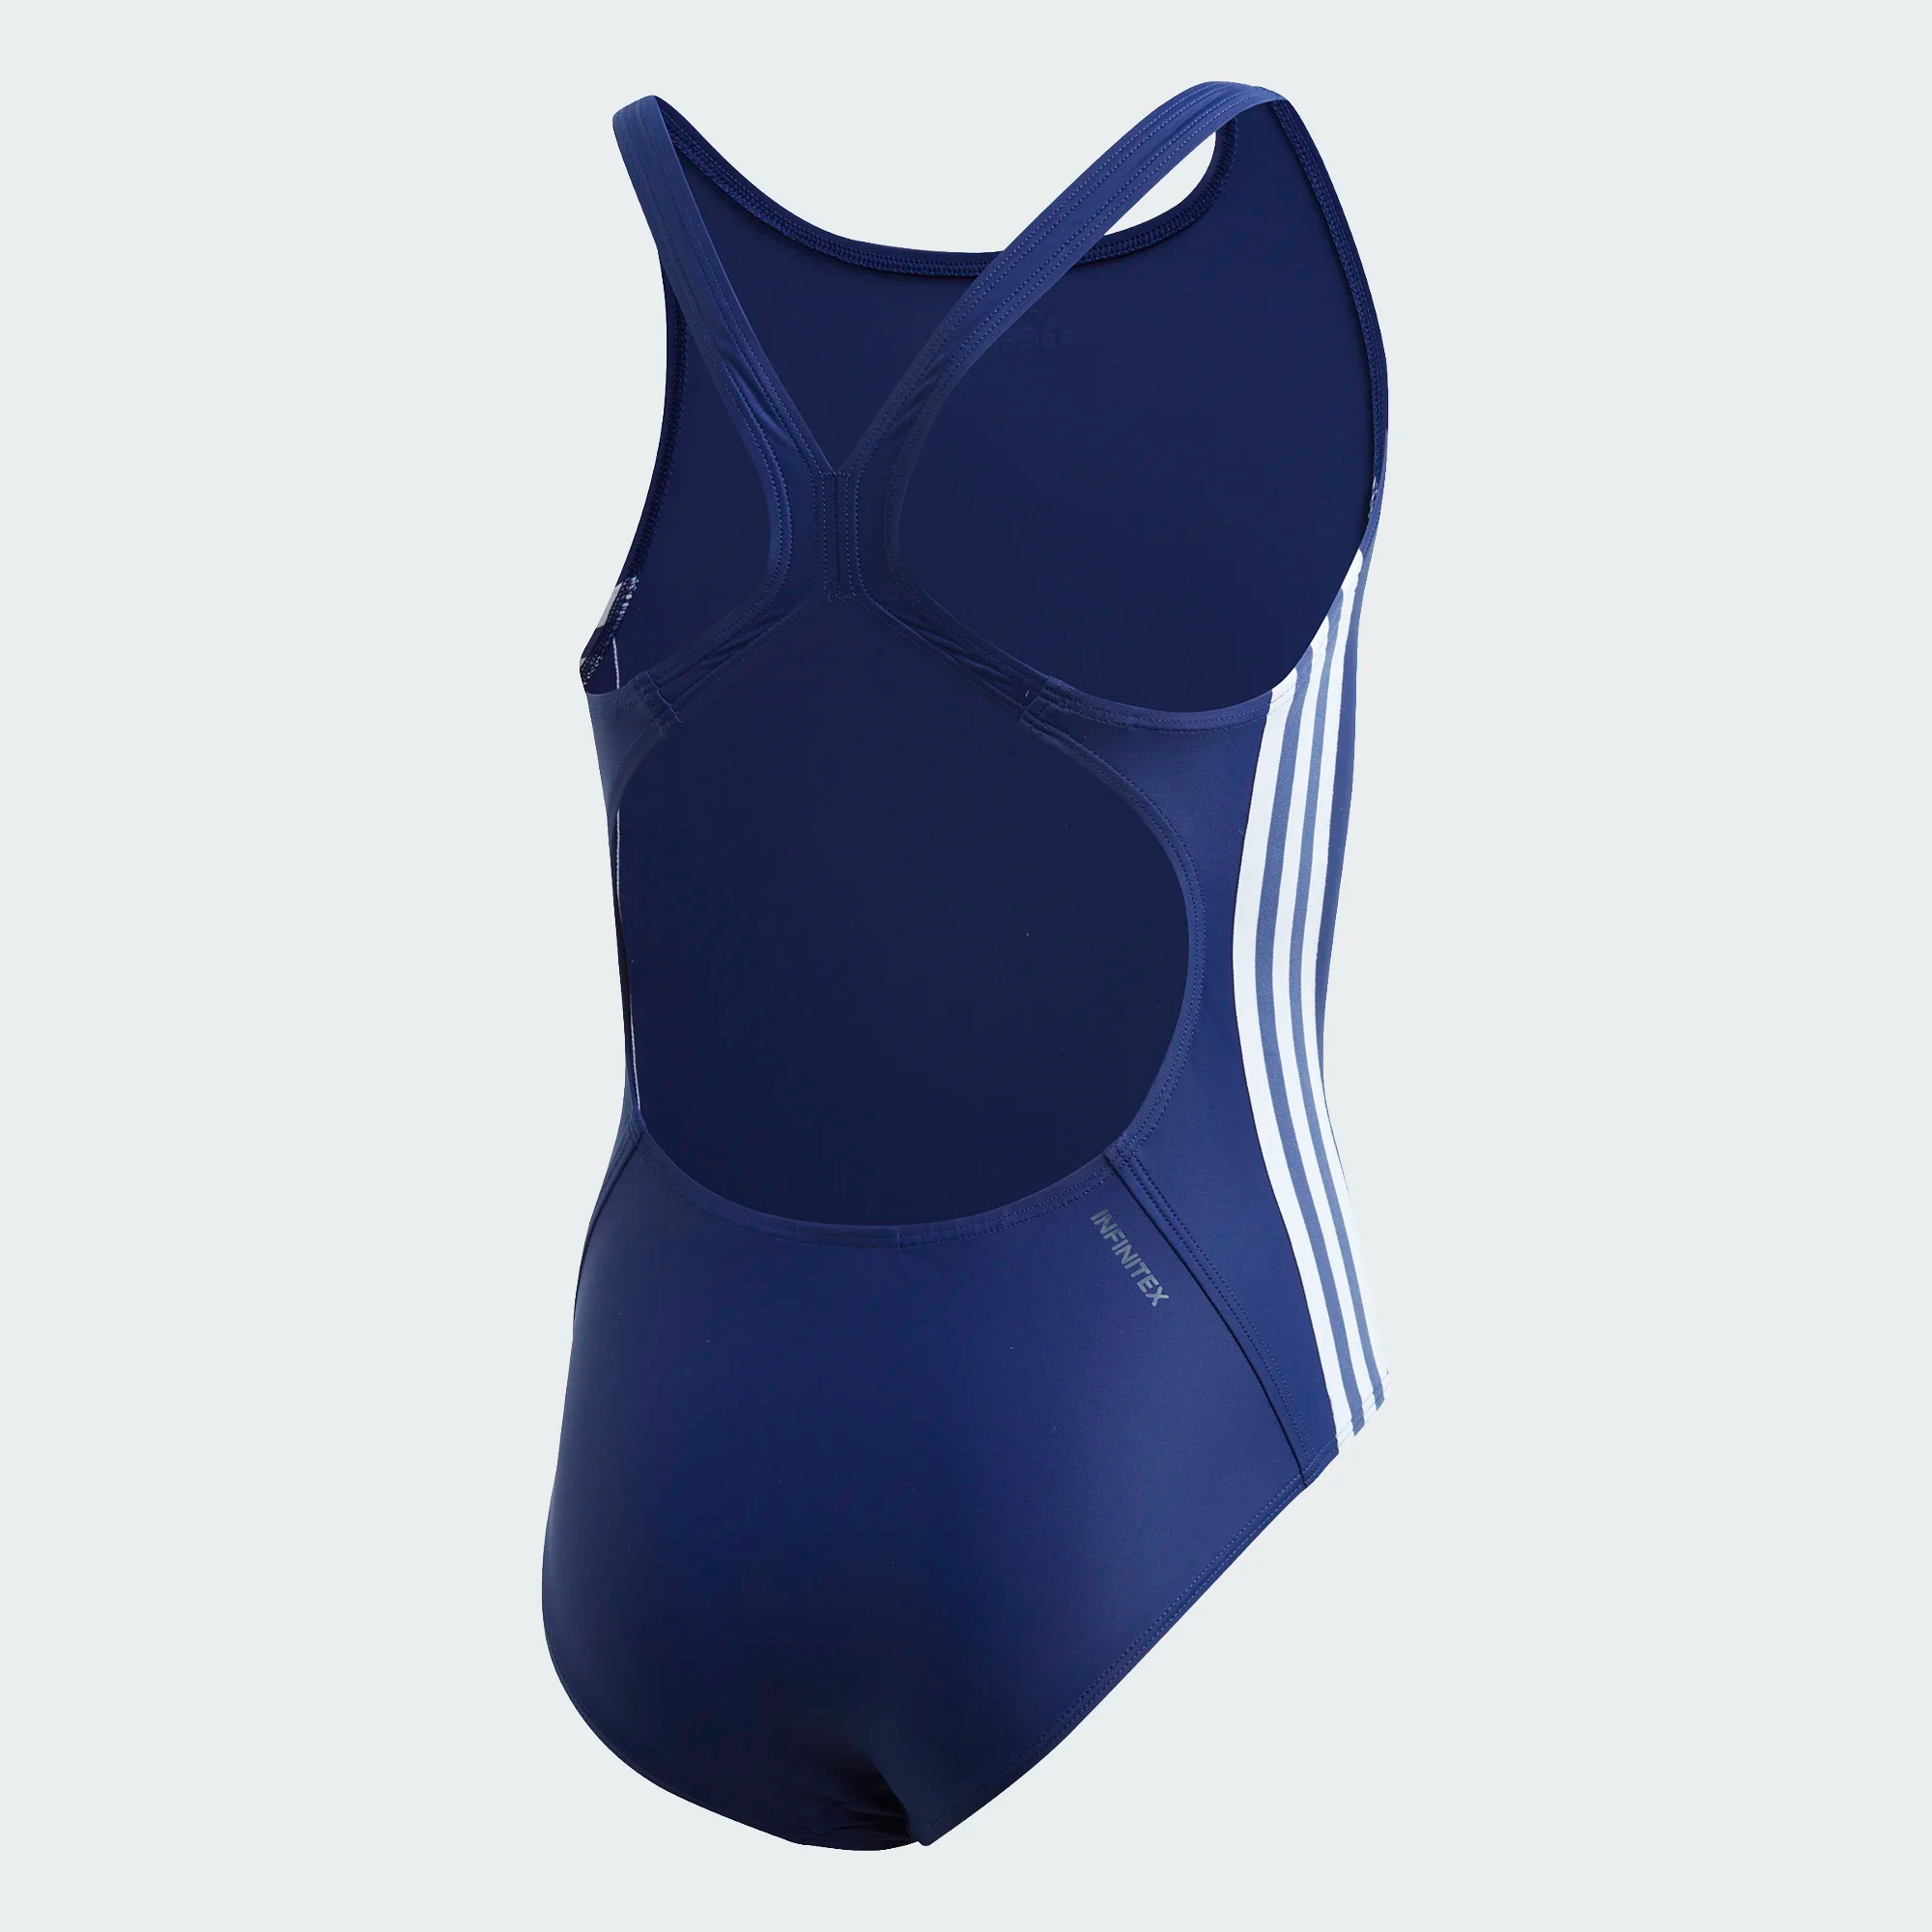 Adidas Athly V 3-Streifen Badeanzug für Mädchen - dunkelblau